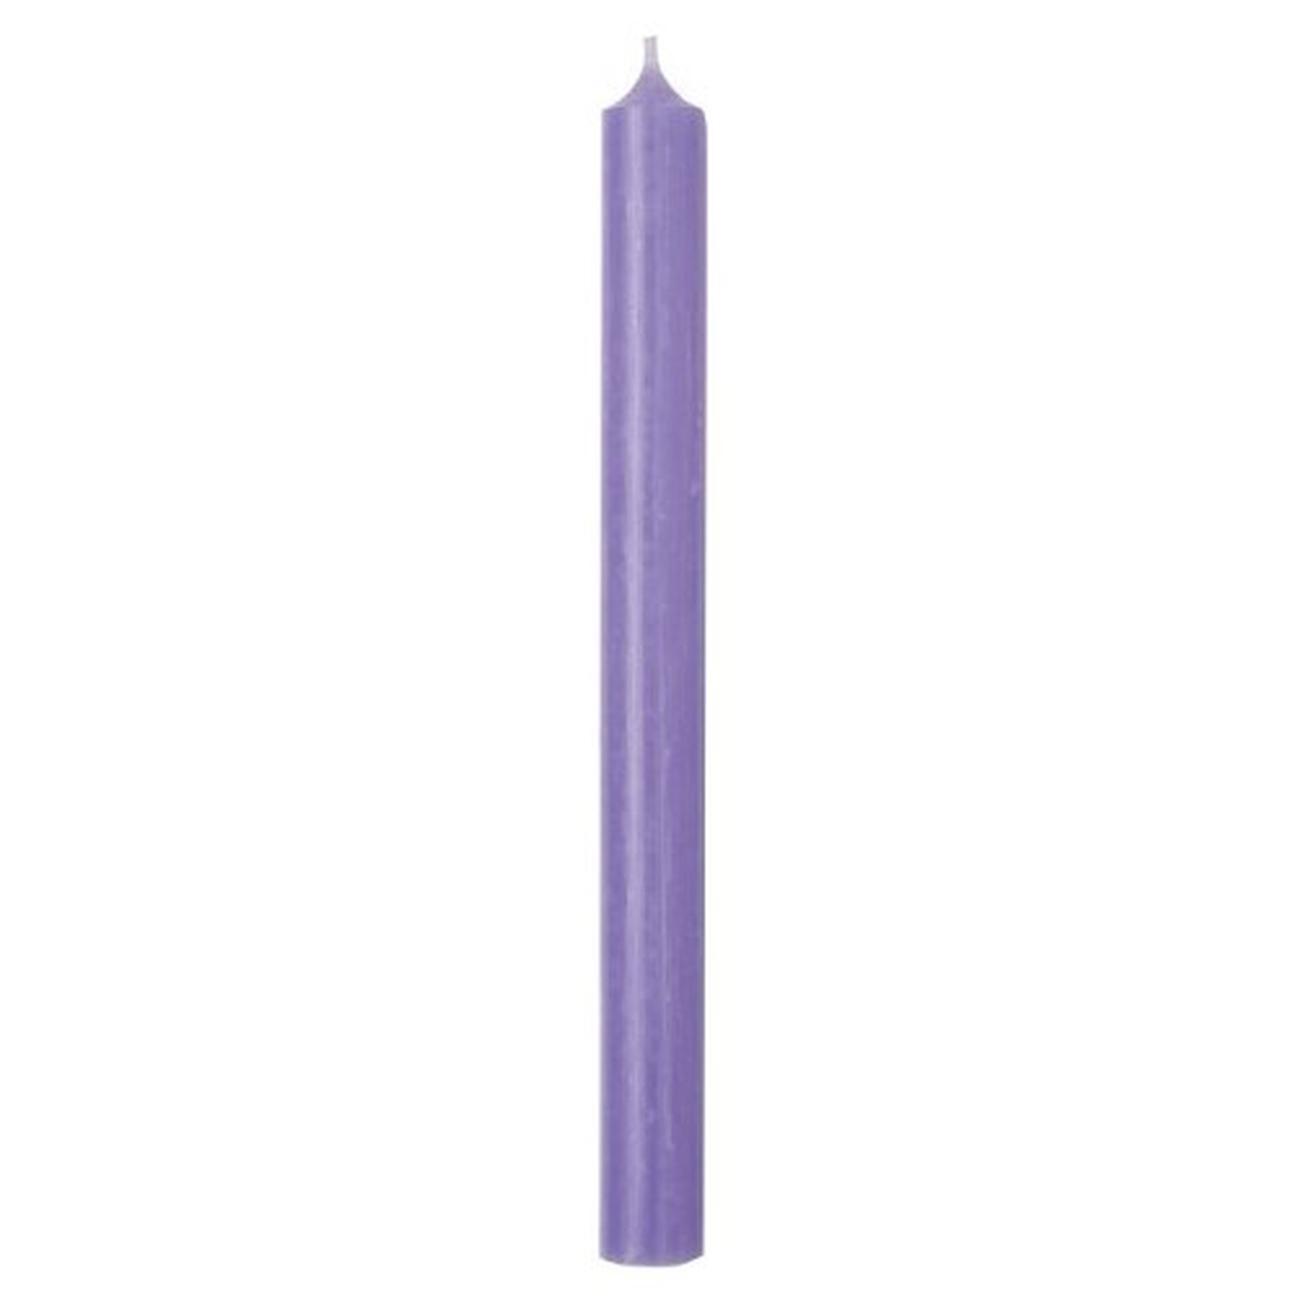 ihr-cylinder-candle-light-purple - IHR Cylinder Candle Lavender